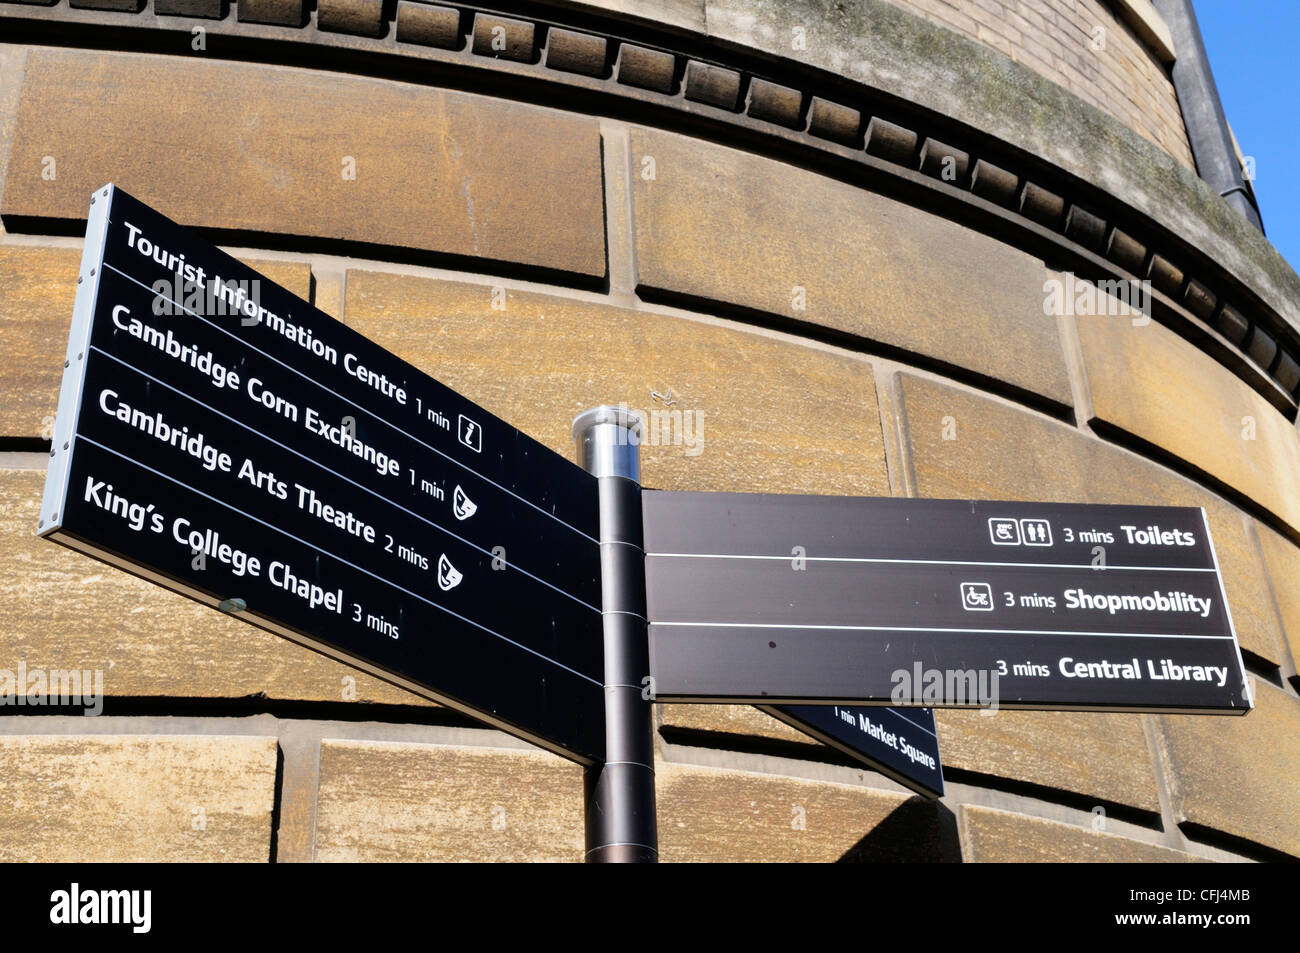 Wegweiser zu touristischen Attraktionen und Einrichtungen, Cambridge, England, UK Stockfoto